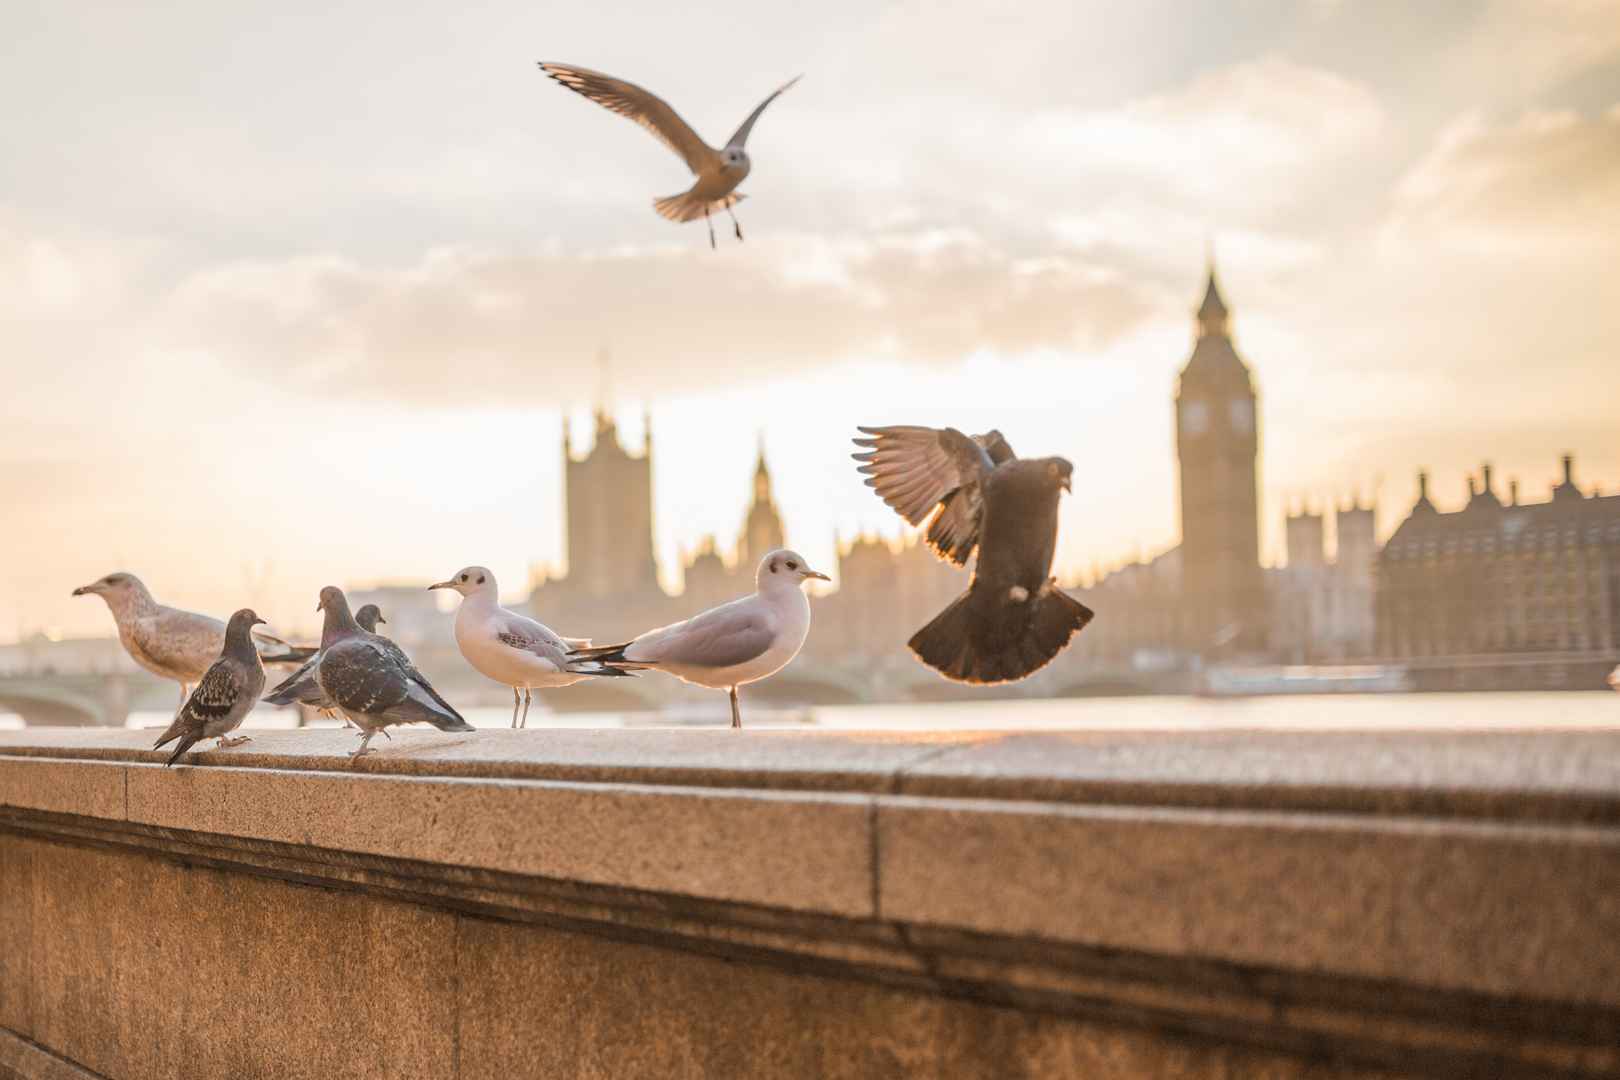 海鸥 信鸽 和平鸽 城市伦敦 壁纸